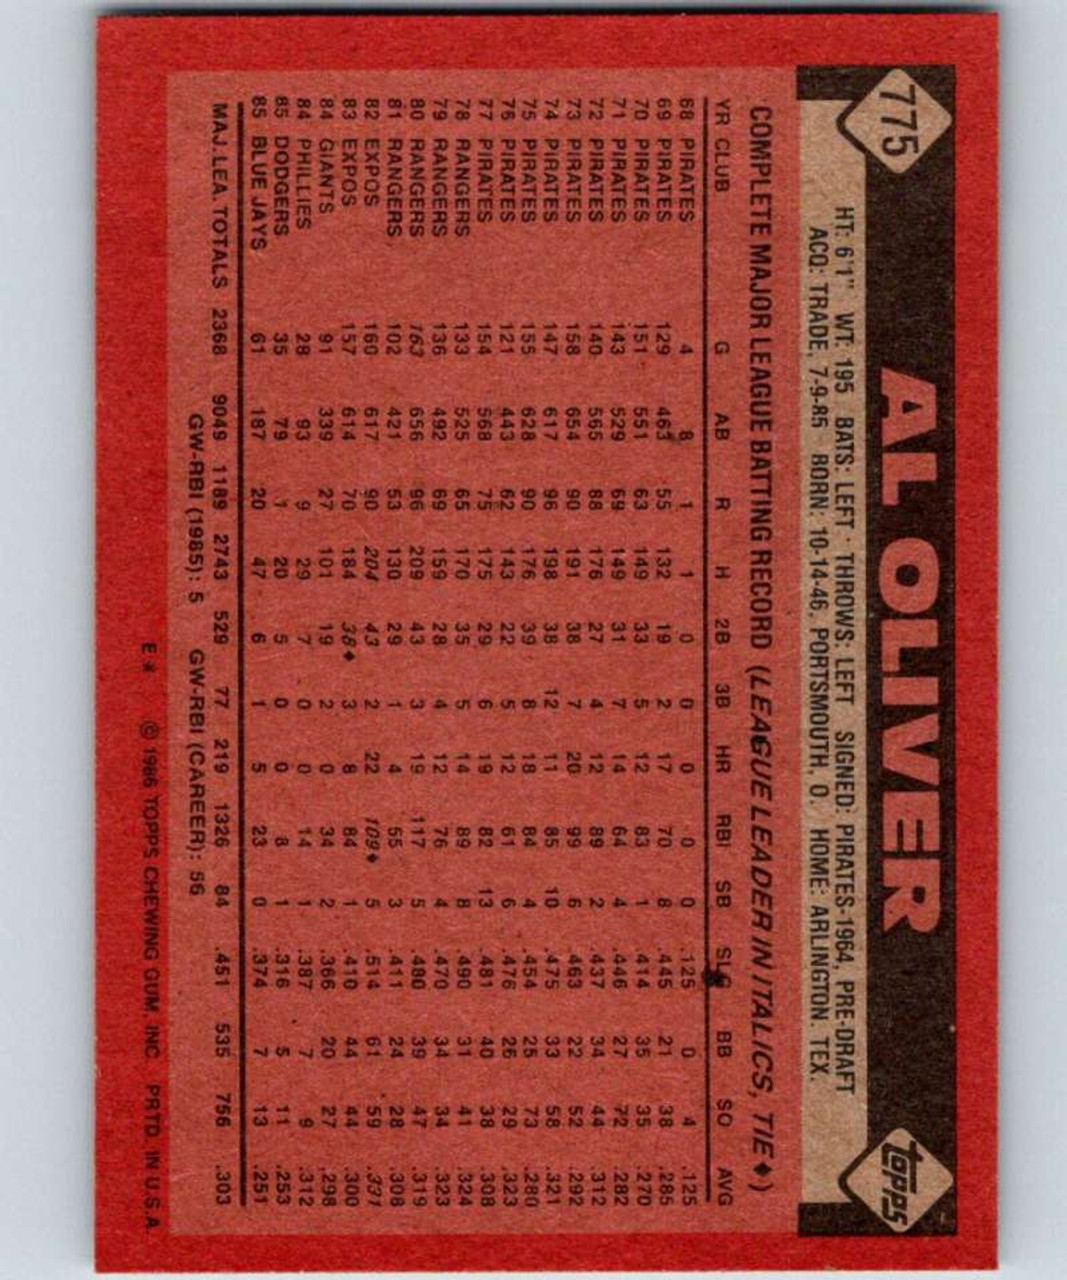 Al Leiter #233 Topps 1991 Baseball Card (Toronto Blue Jays) VG